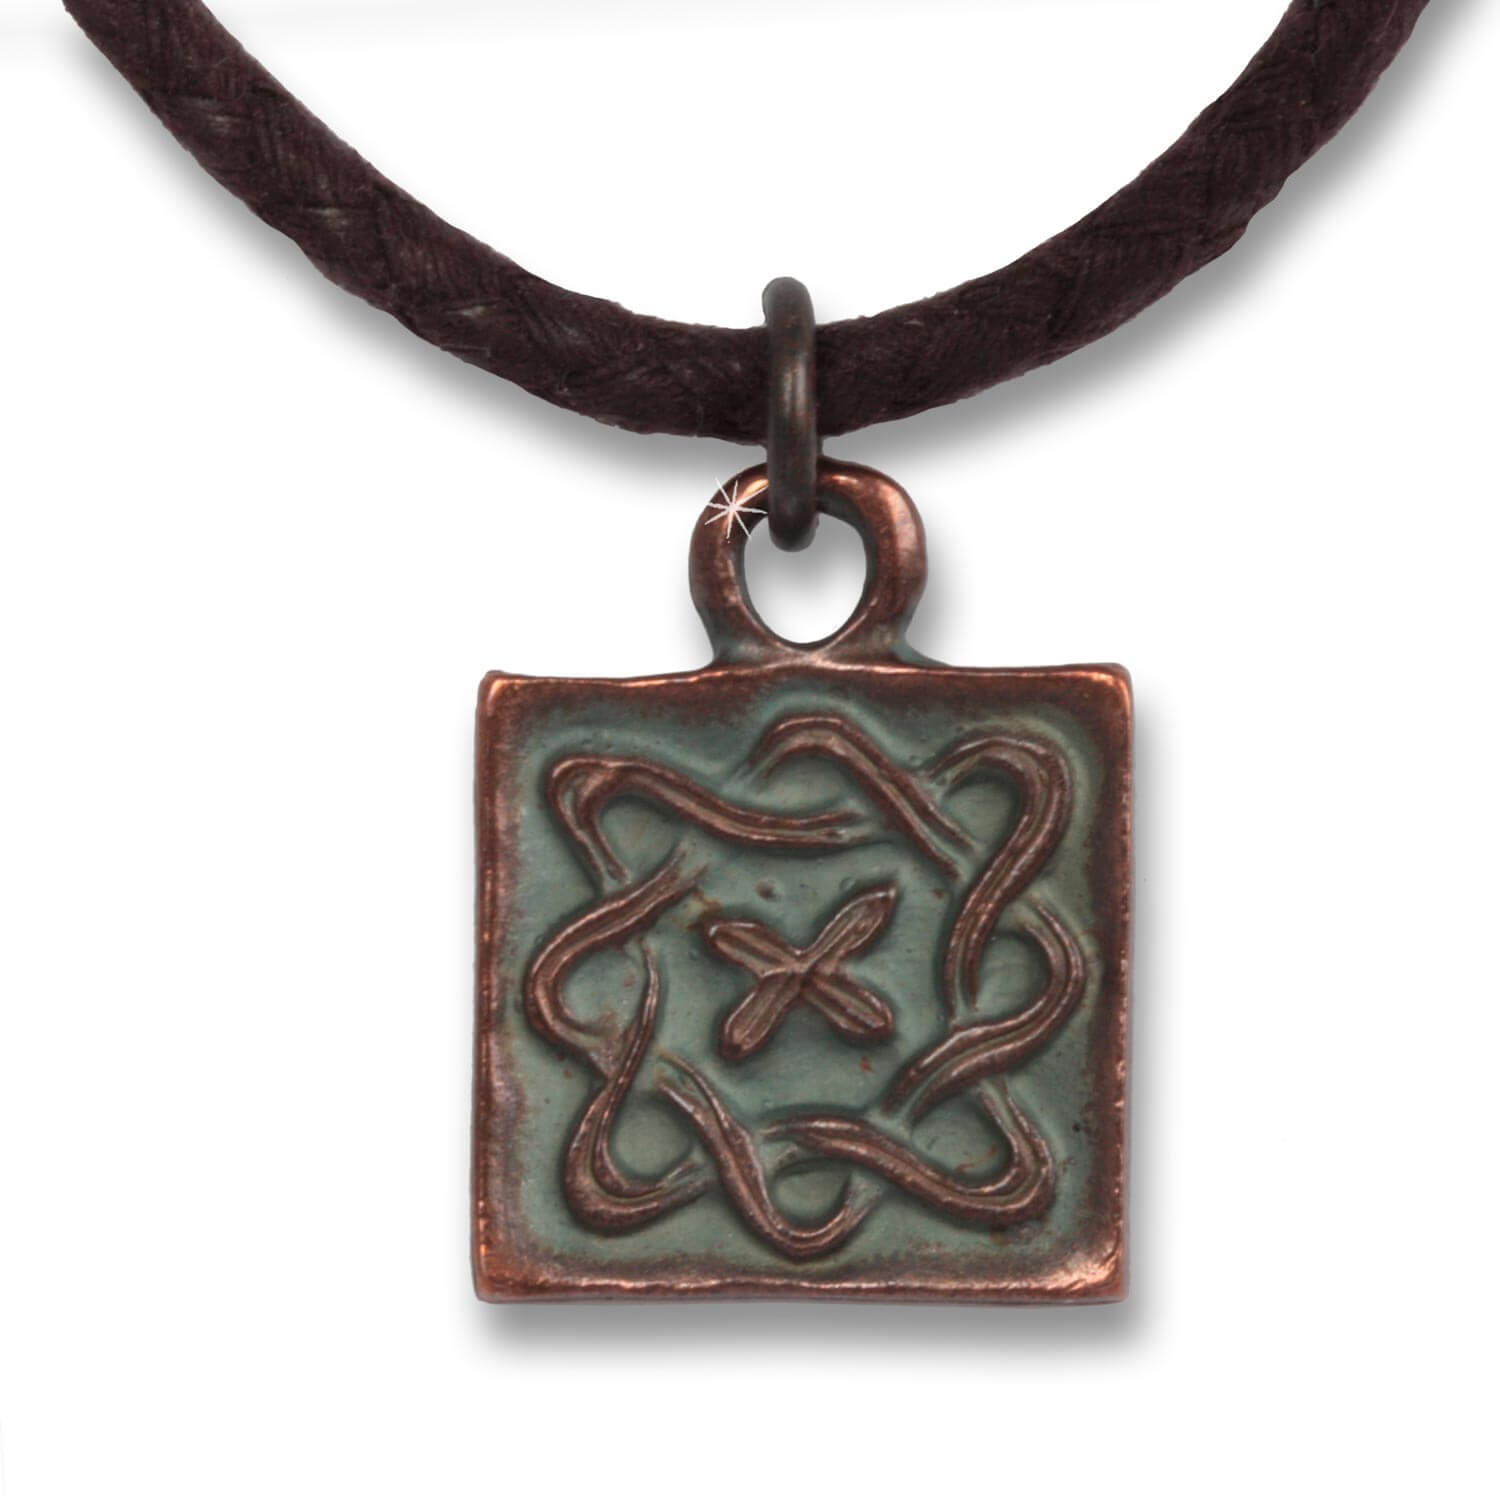 Infinity Square - Indian Symbols men's necklace Antique Copper cotton, 54 cm long